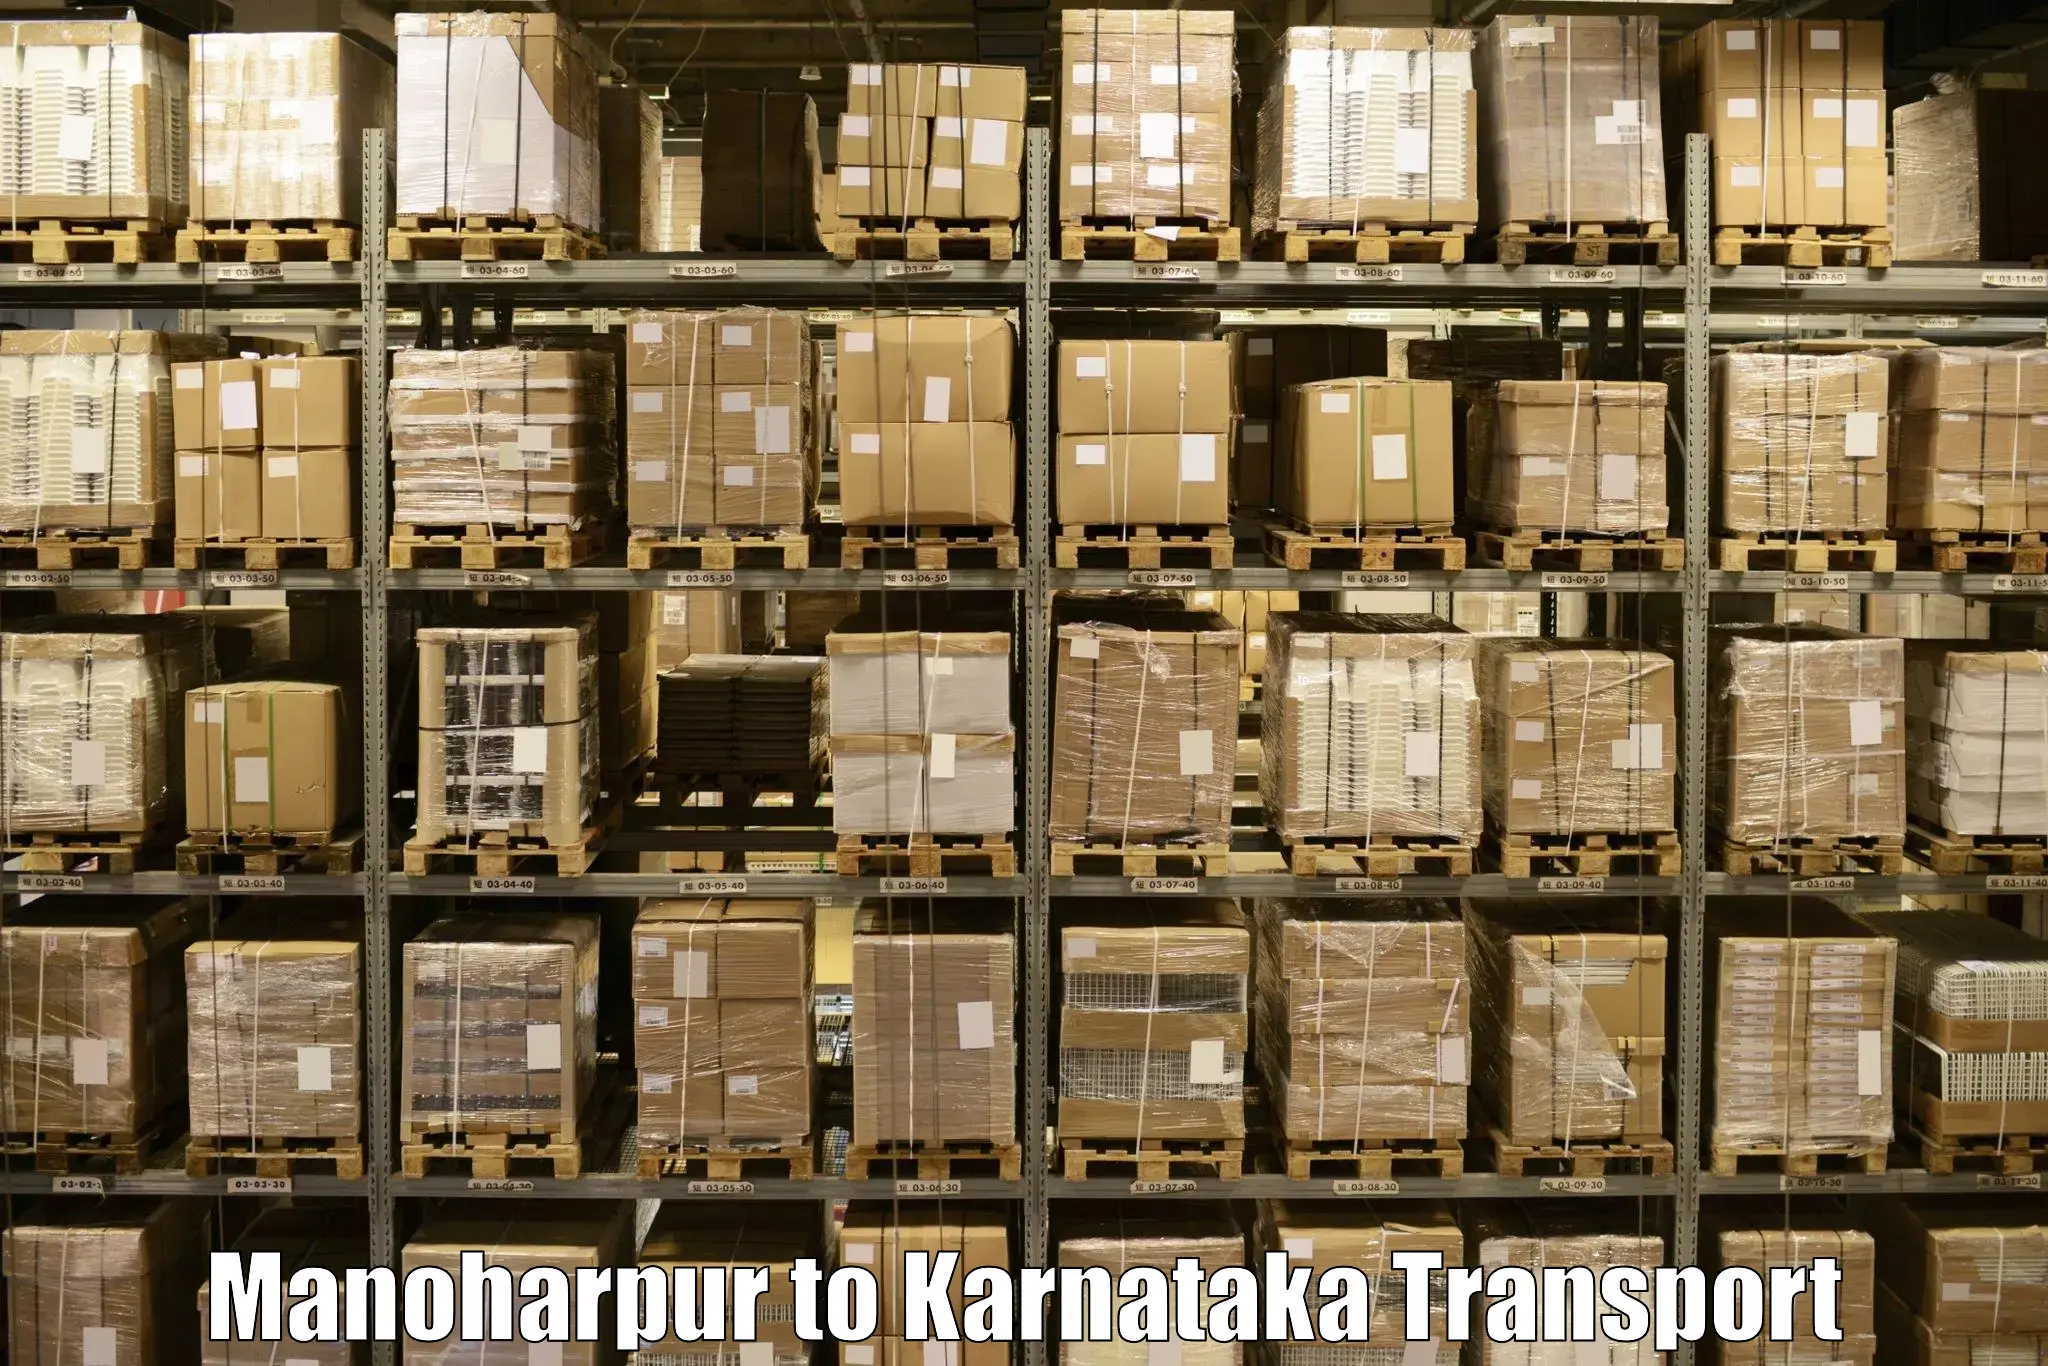 Daily transport service Manoharpur to Kadur